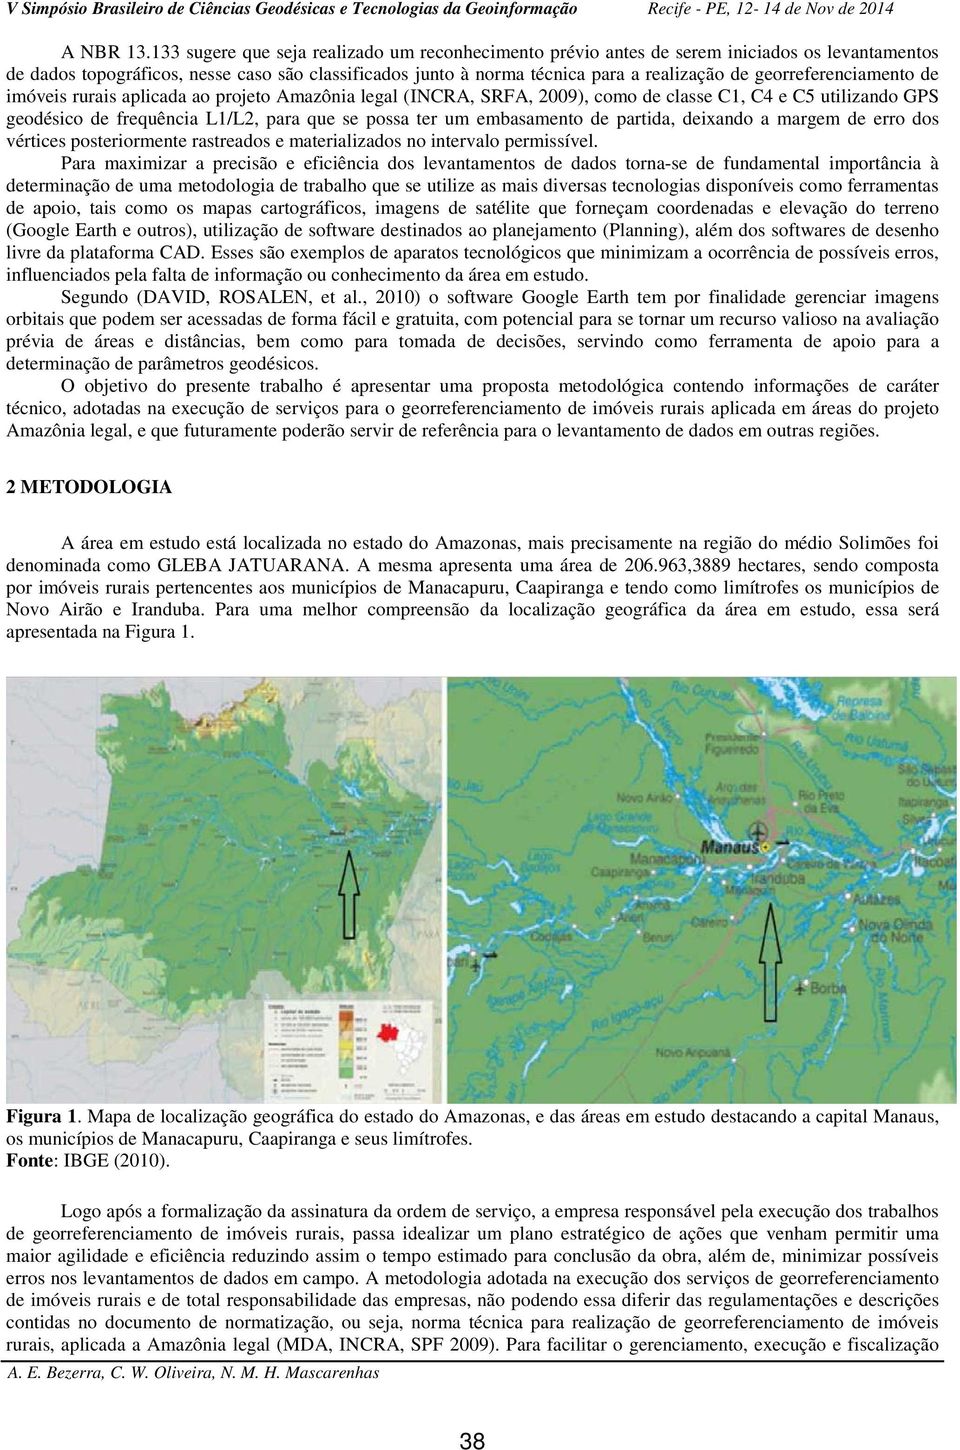 georreferenciamento de imóveis rurais aplicada ao projeto Amazônia legal (INCRA, SRFA, 2009), como de classe C1, C4 e C5 utilizando GPS geodésico de frequência L1/L2, para que se possa ter um